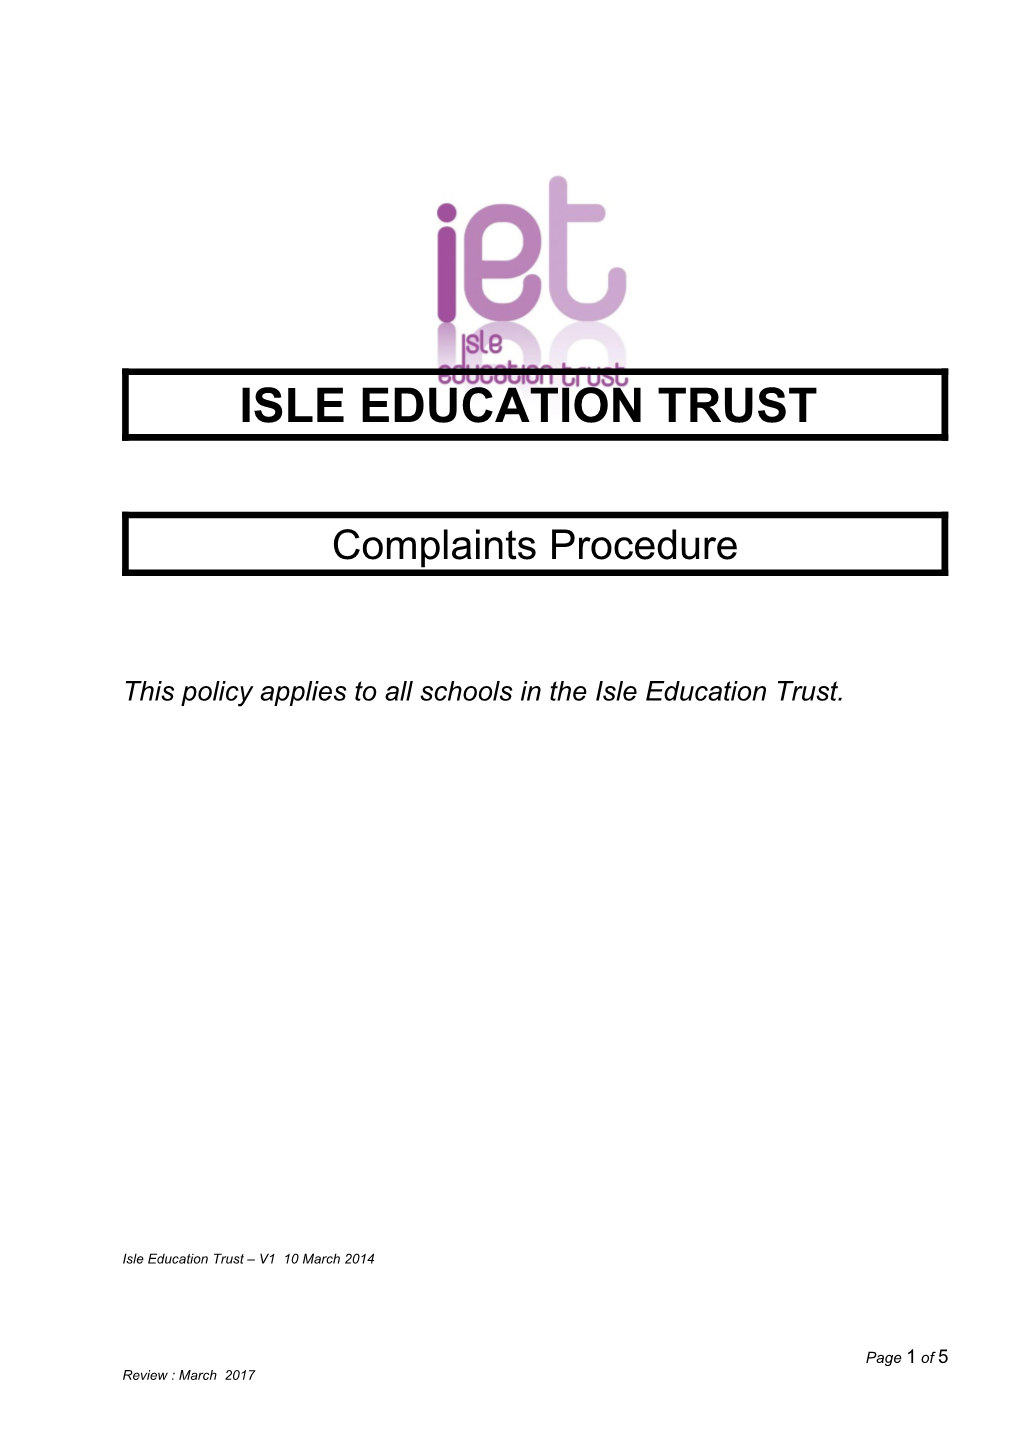 Isle Education Trust